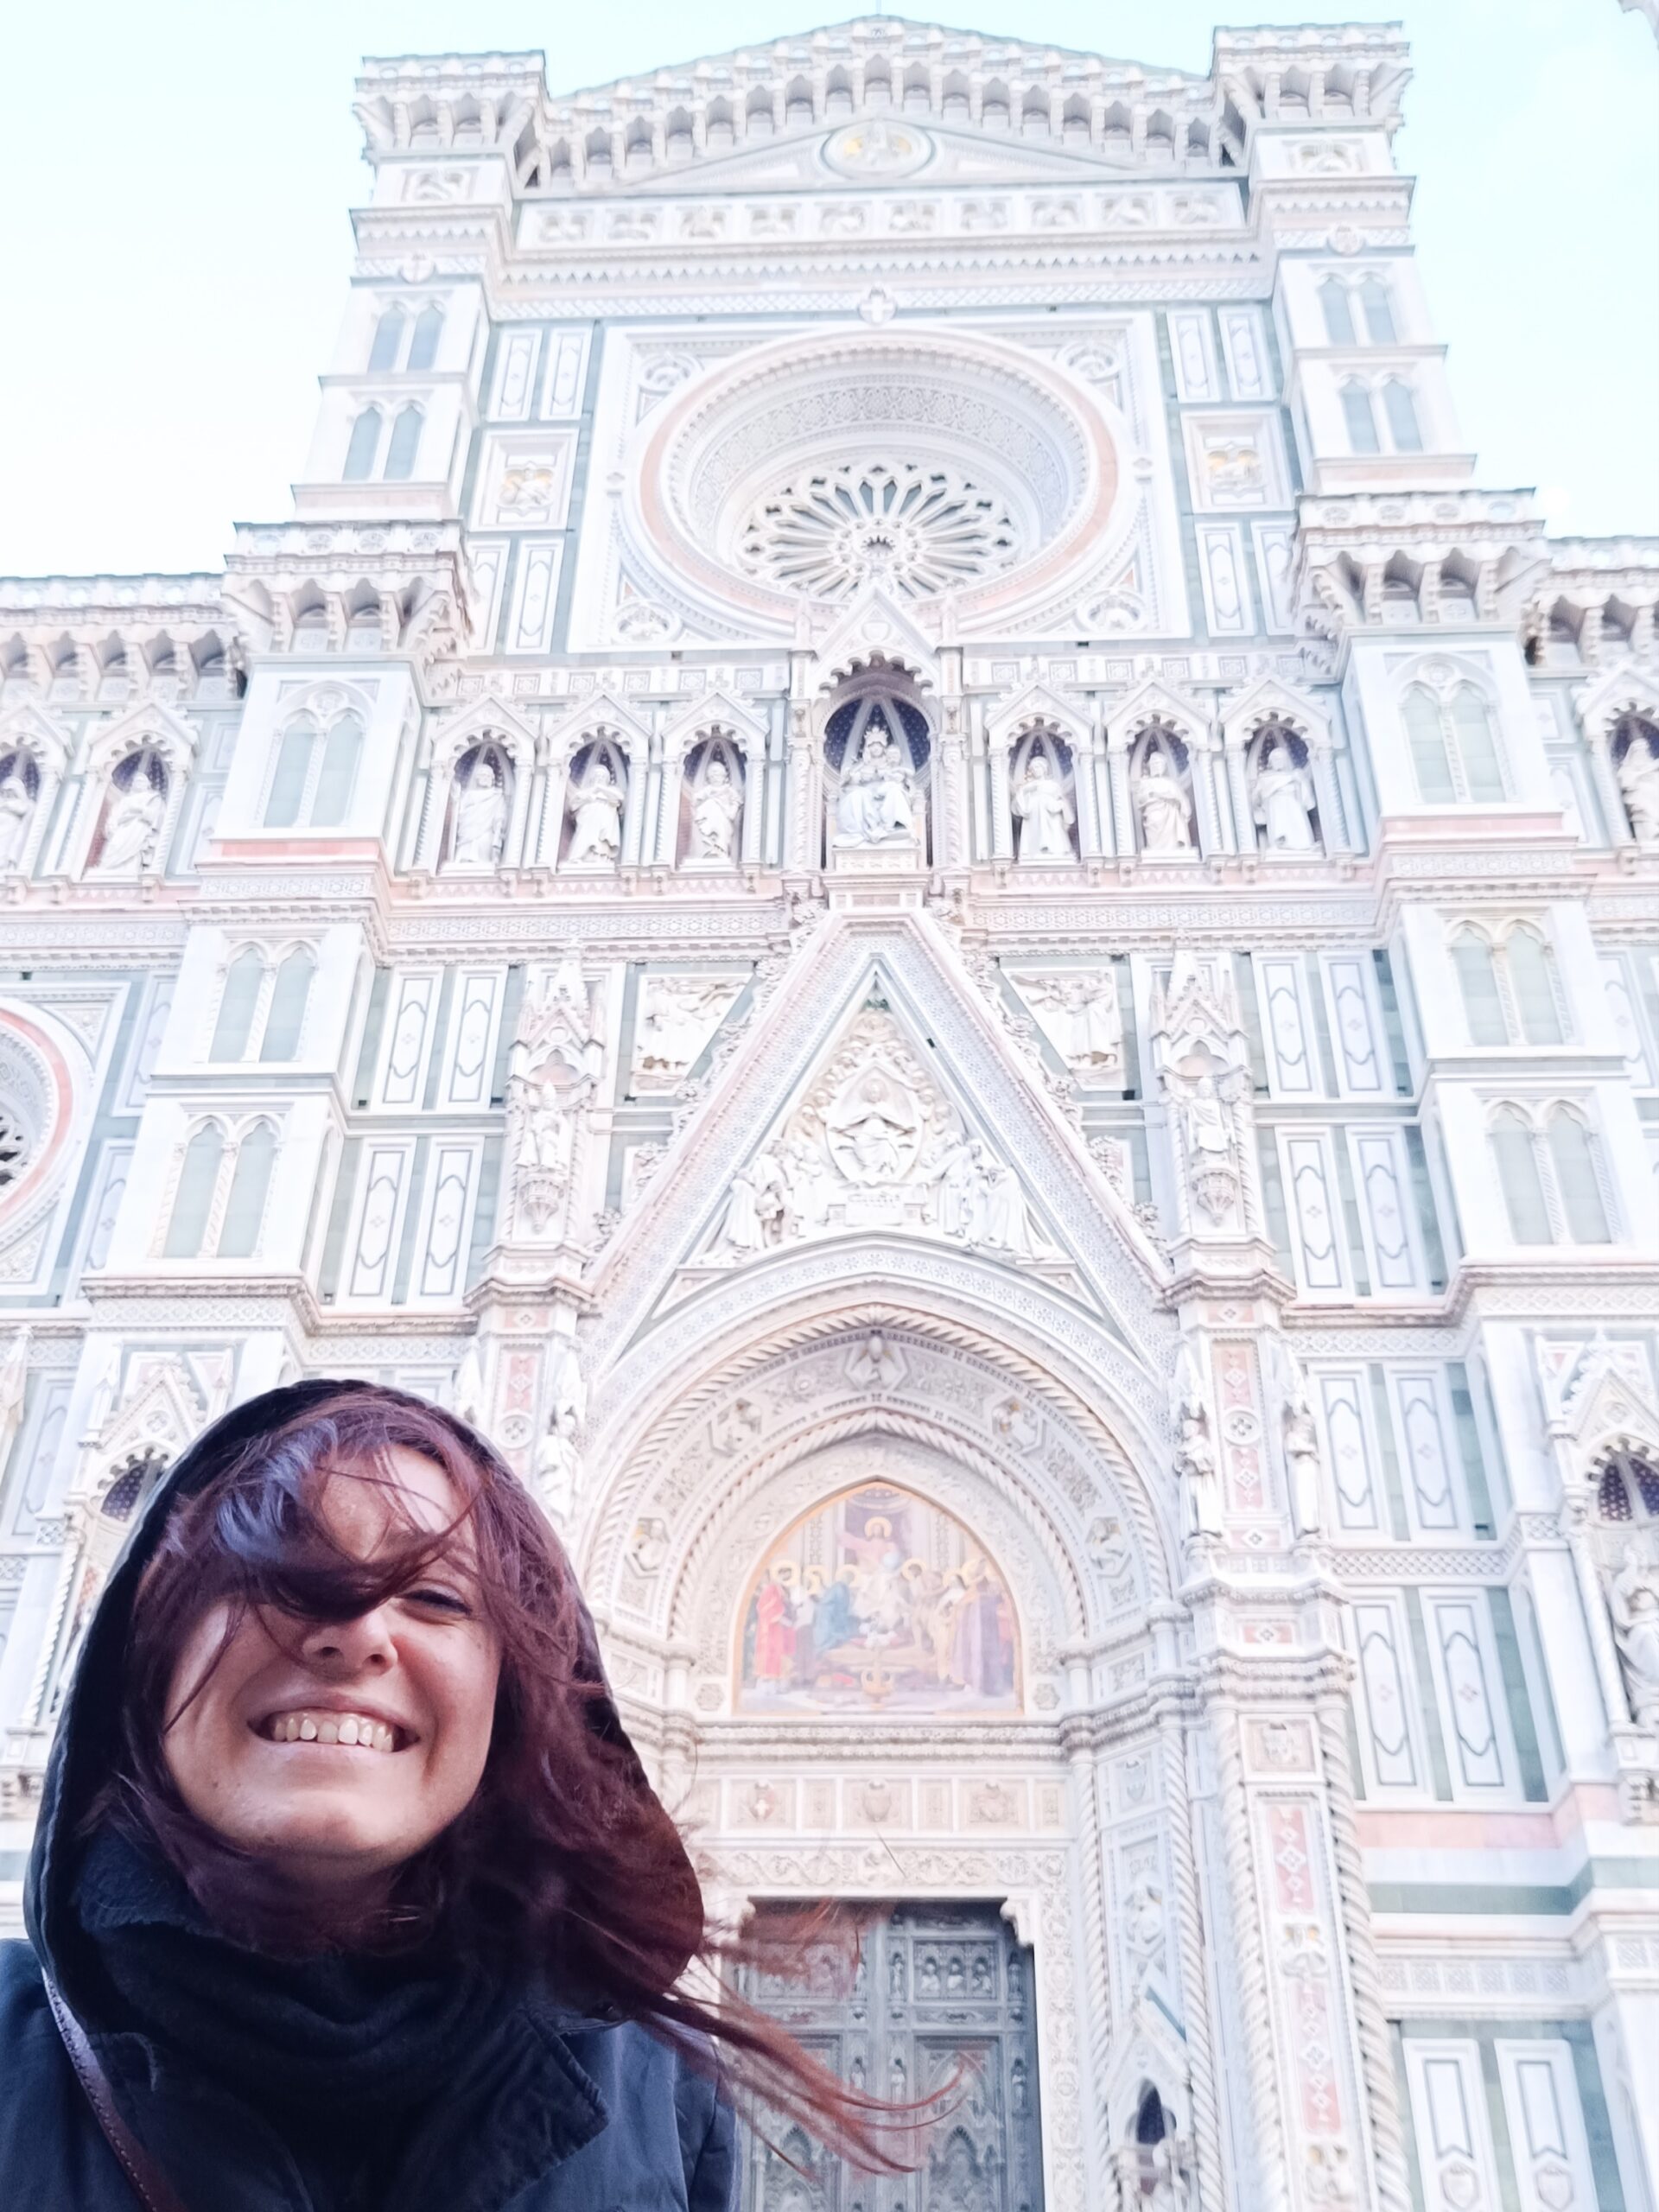 Cosa vedere a Firenze: itinerario a piedi duomo